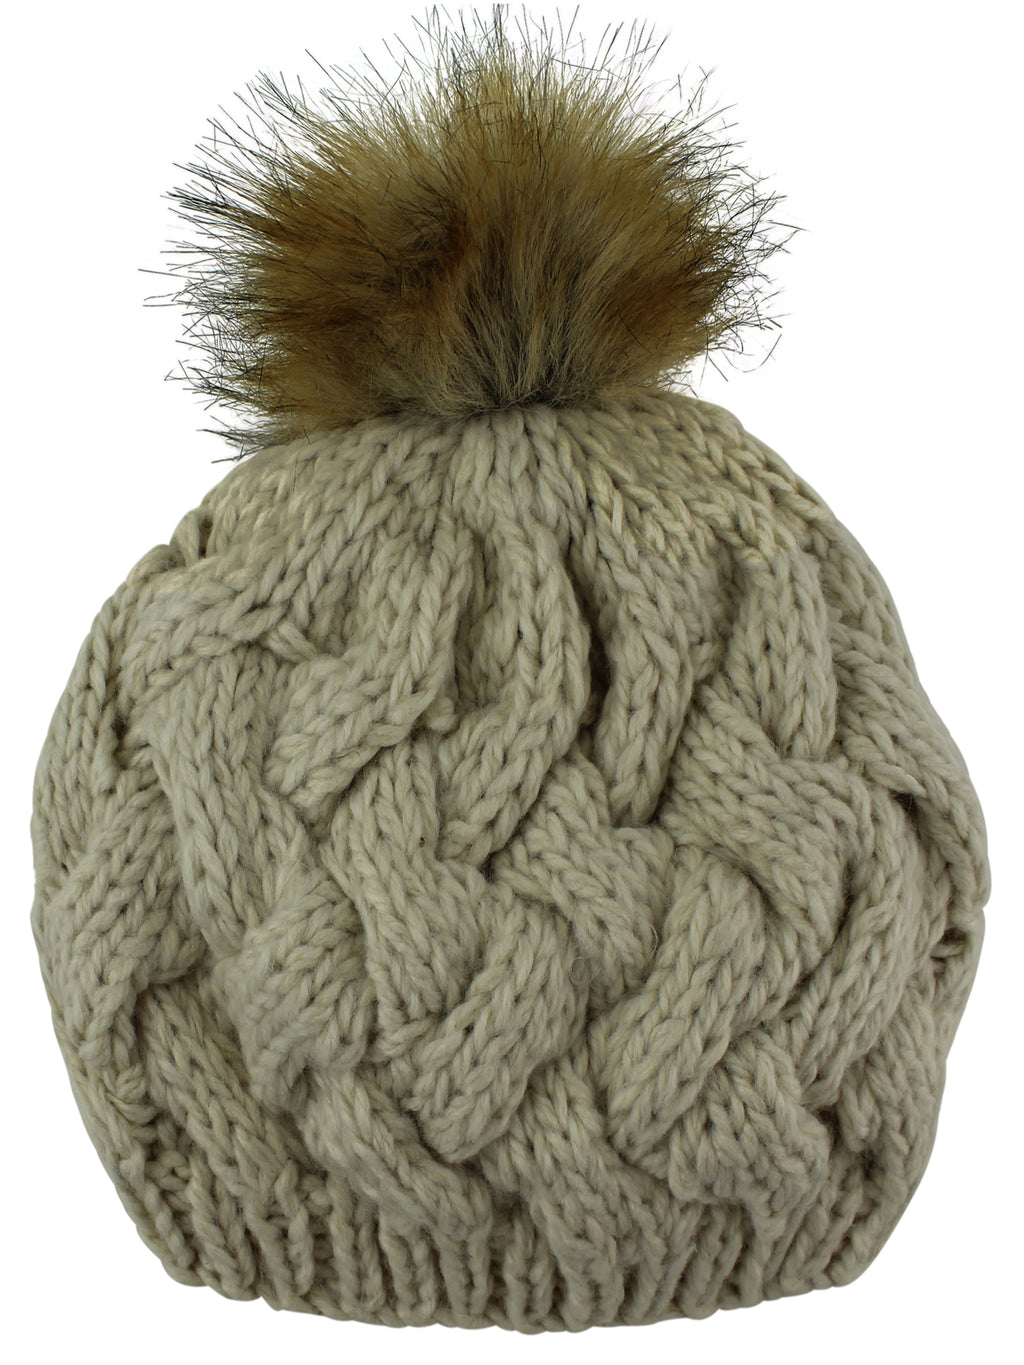 Beige Knit Beret Beanie Hat With Fur Pom Pom